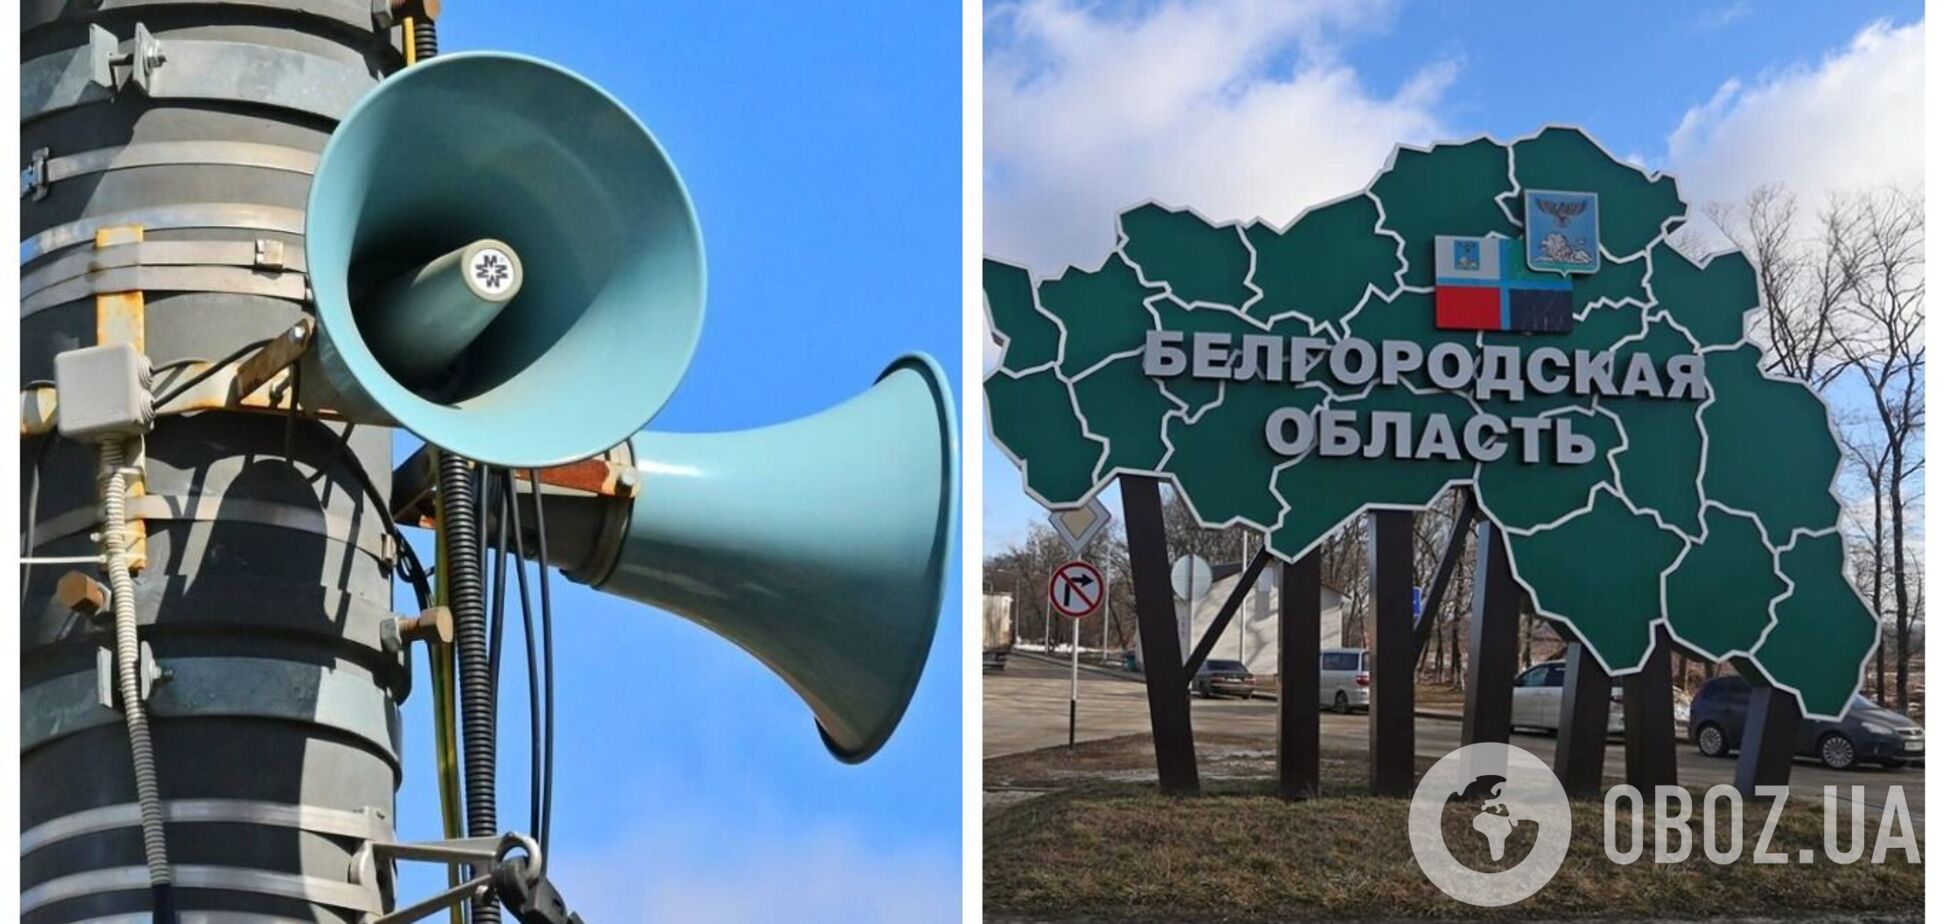 В российском Белгороде зазвучала сирена воздушной тревоги: названа причина. Видео